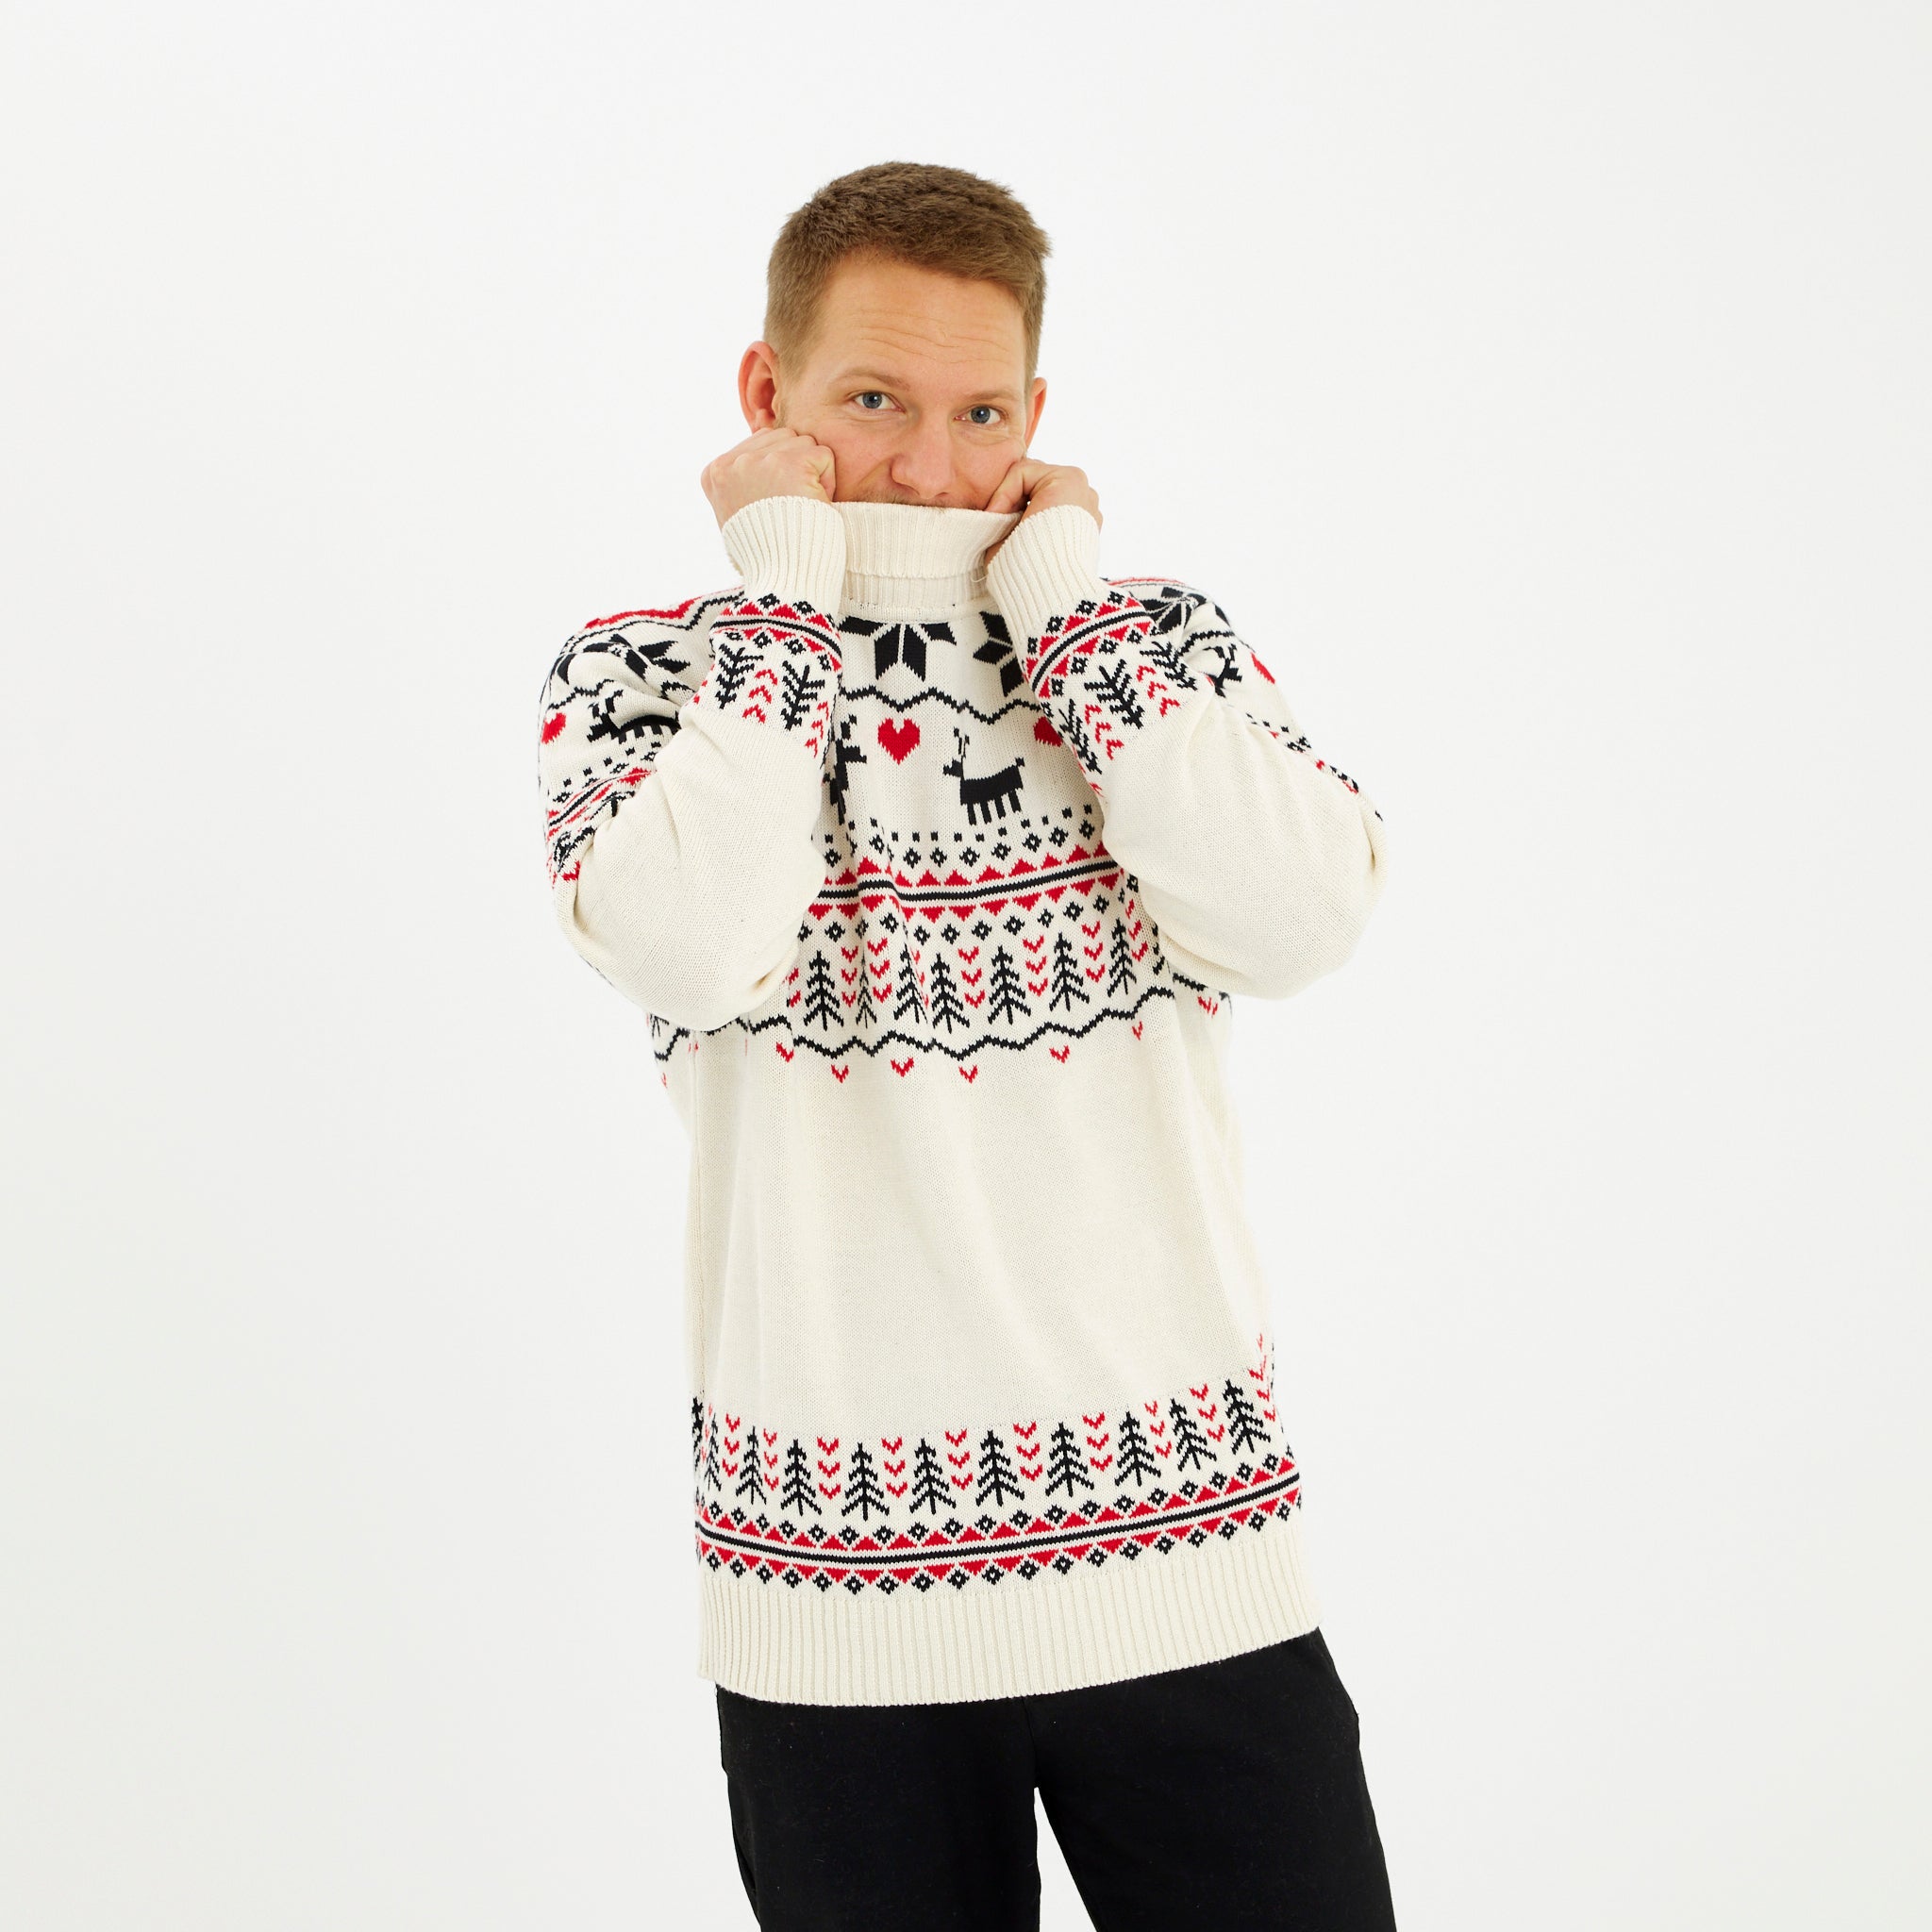 The Greenlandish Christmas Sweater - Herr.